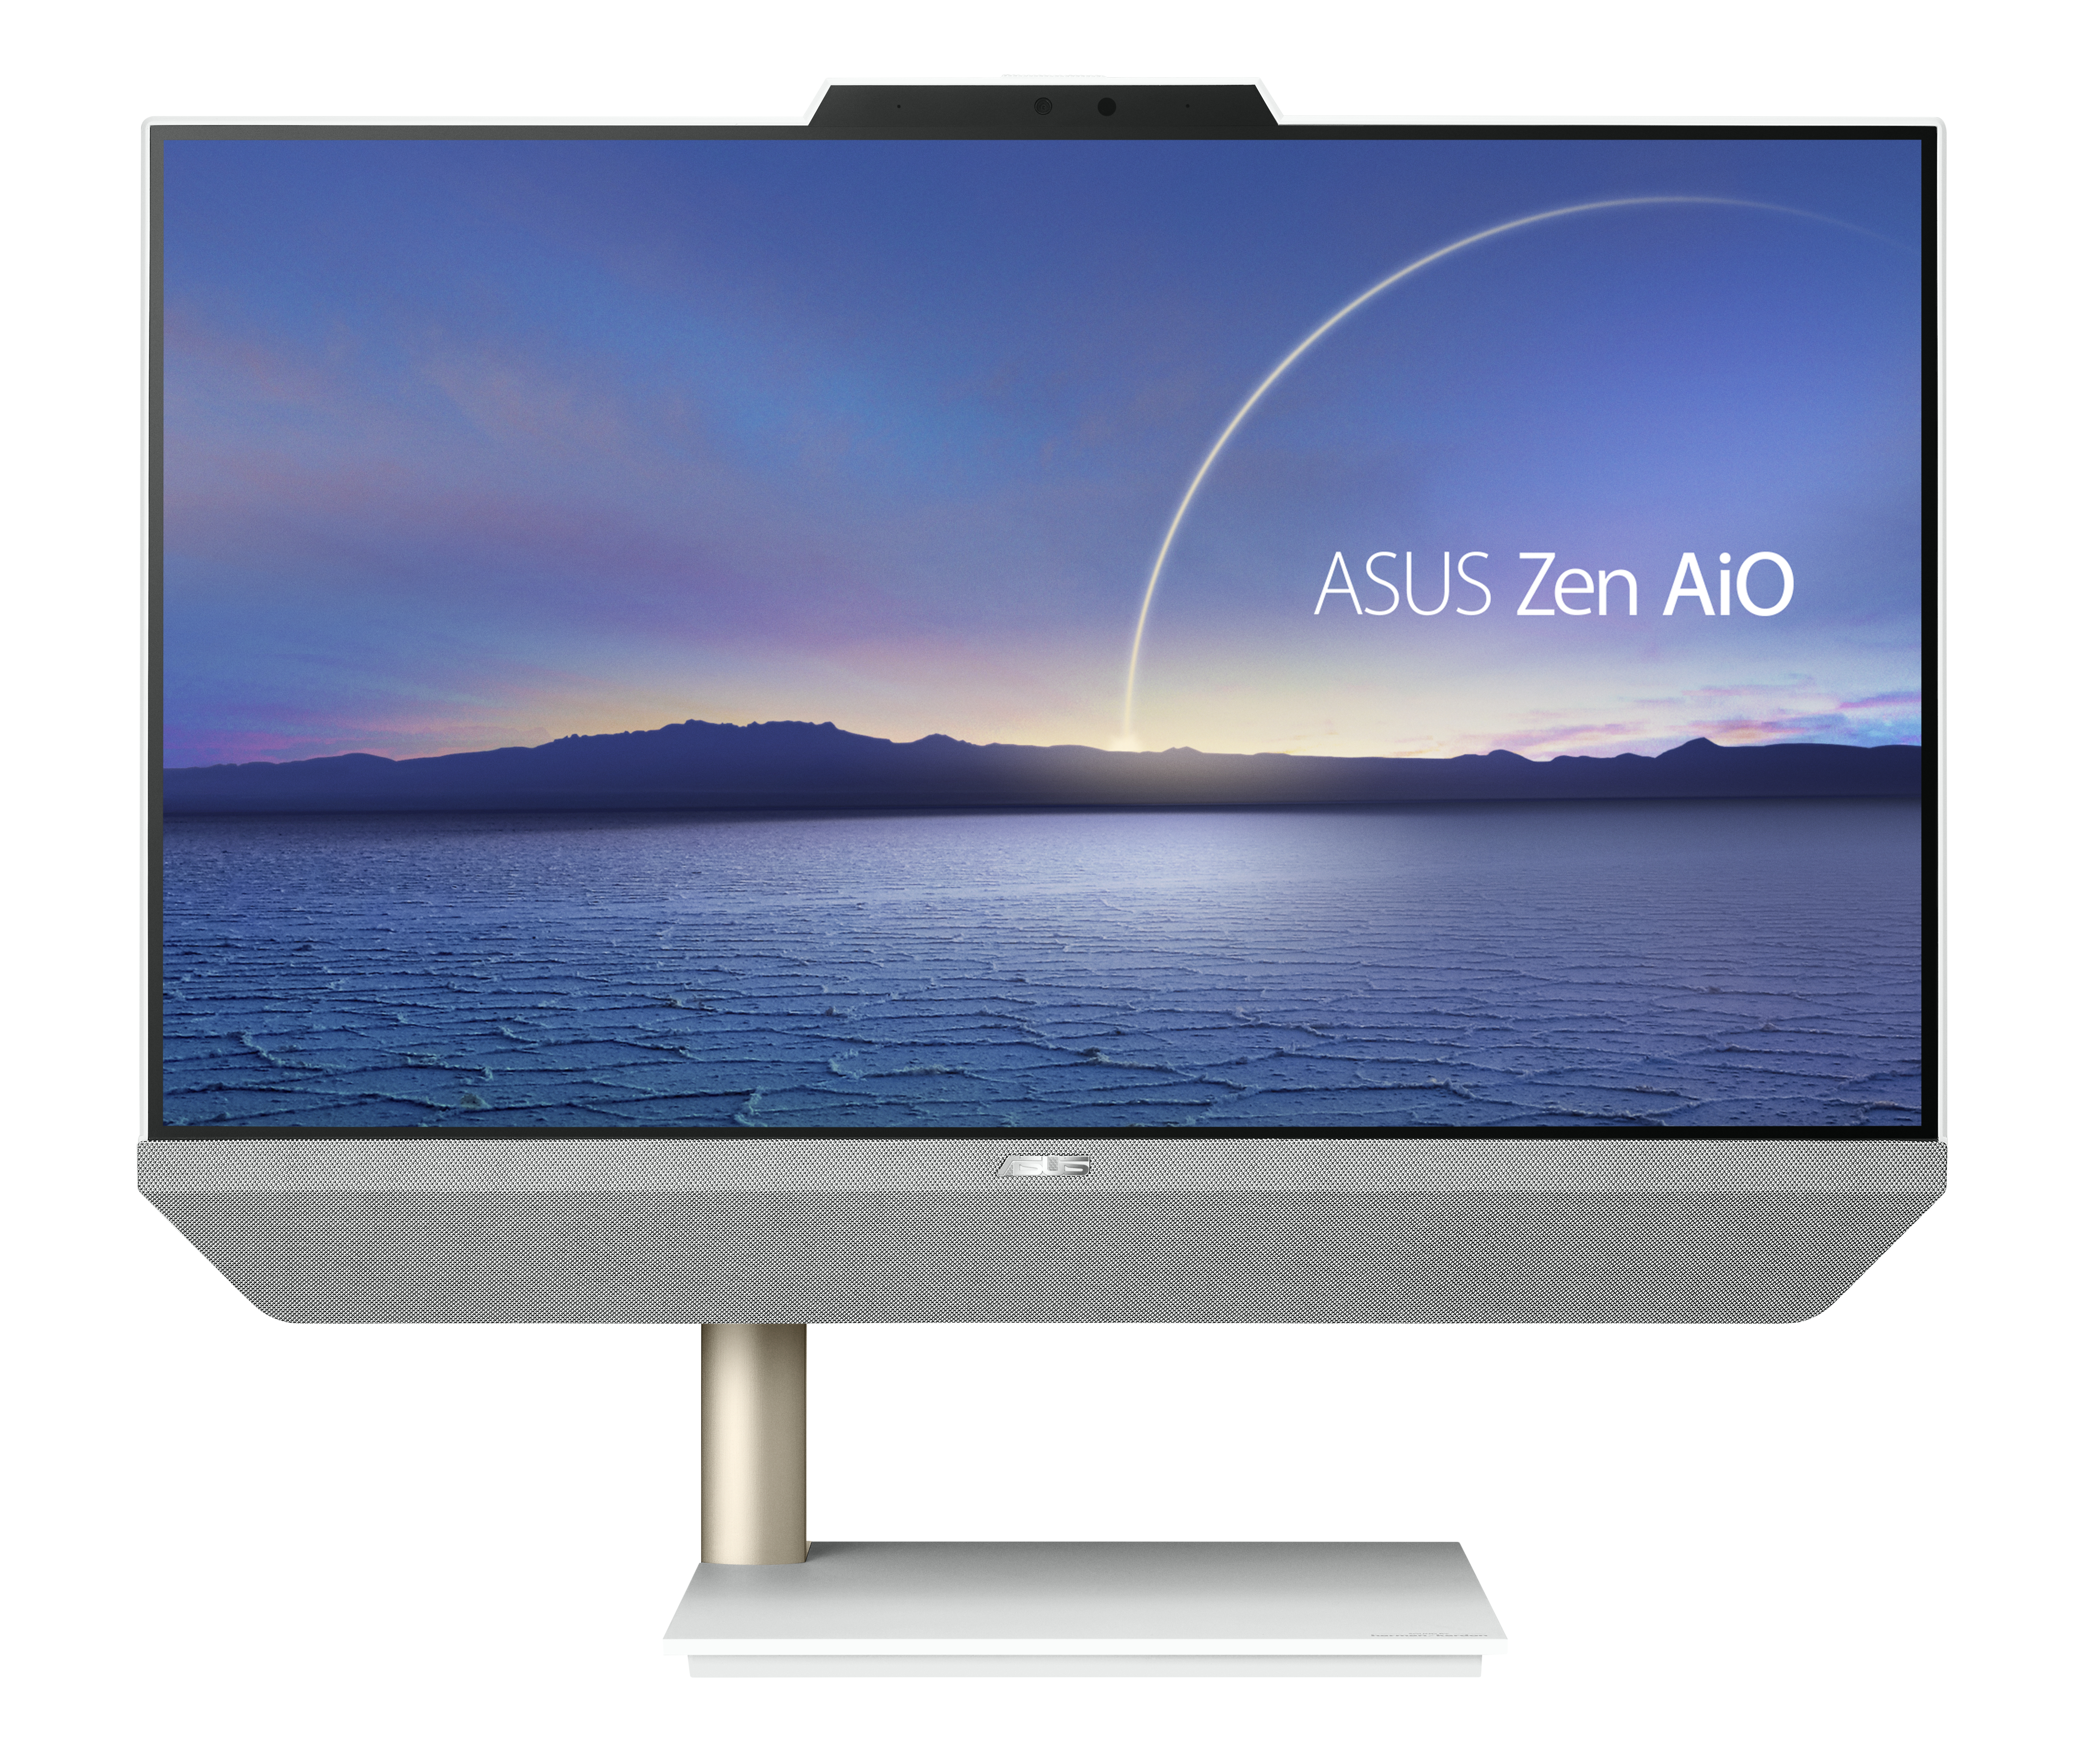 ASUS Zen AiO A5200WFAK-WA014M